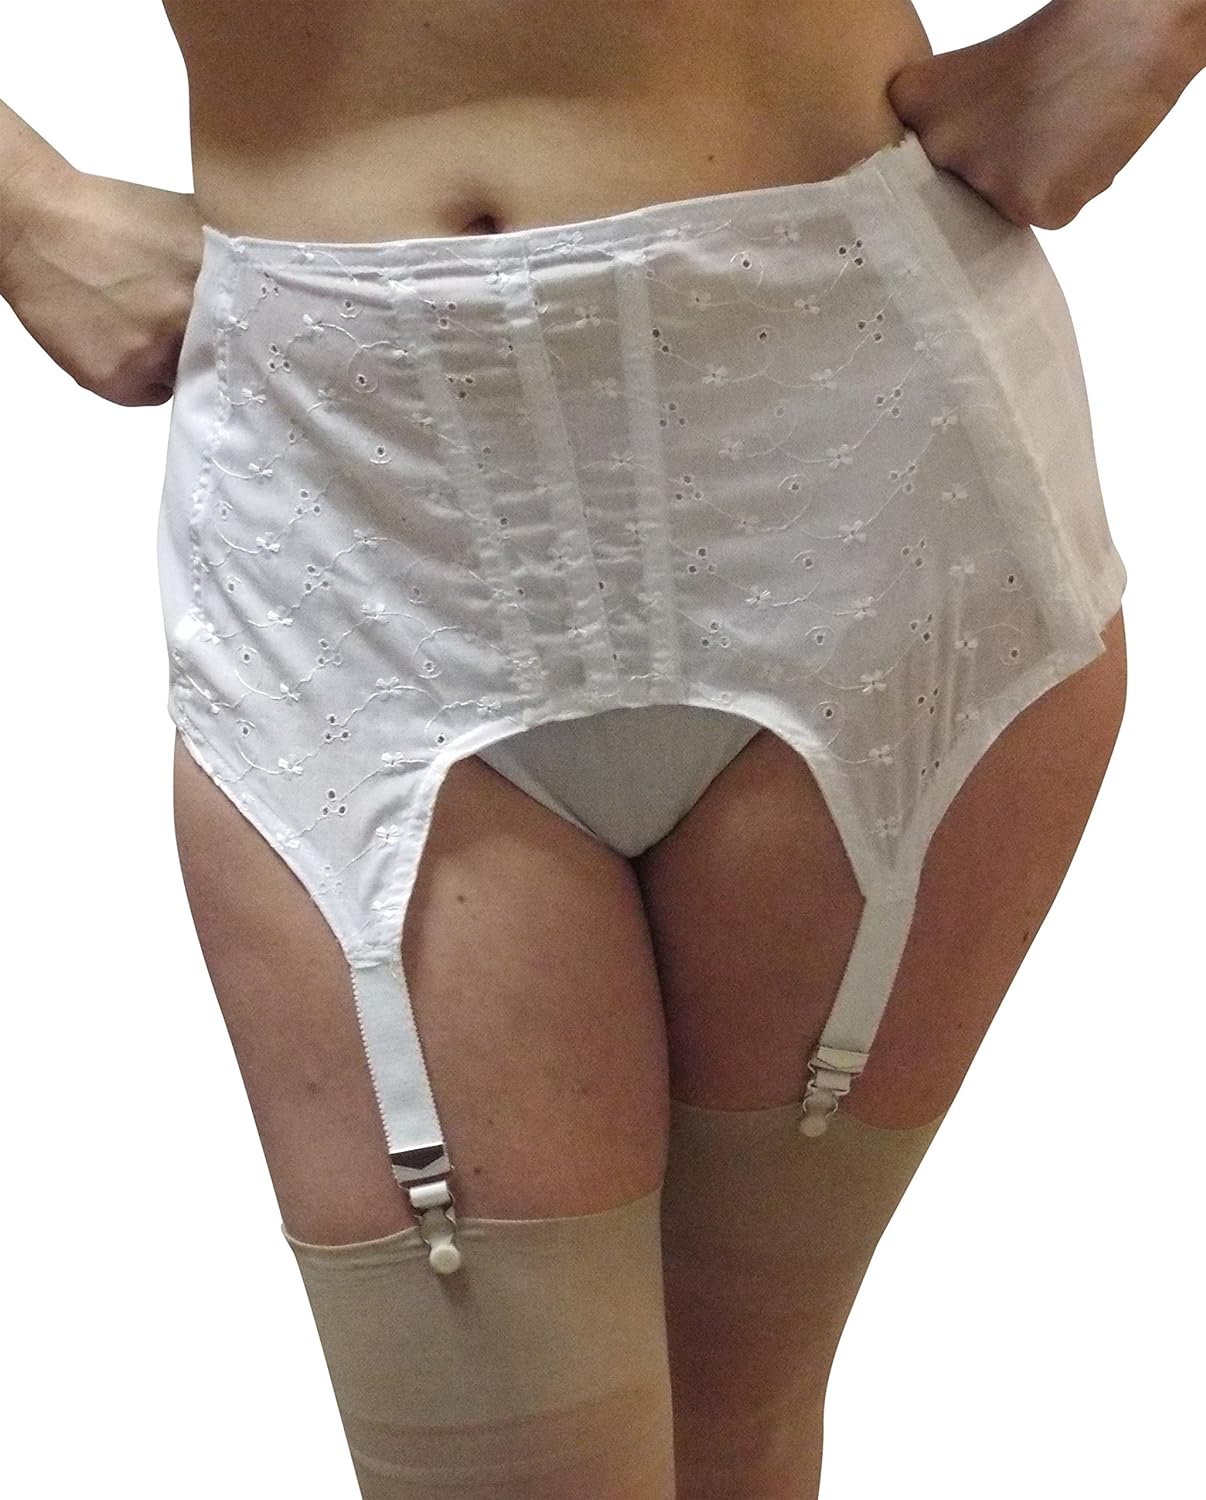 Slips panties stockings garter belts